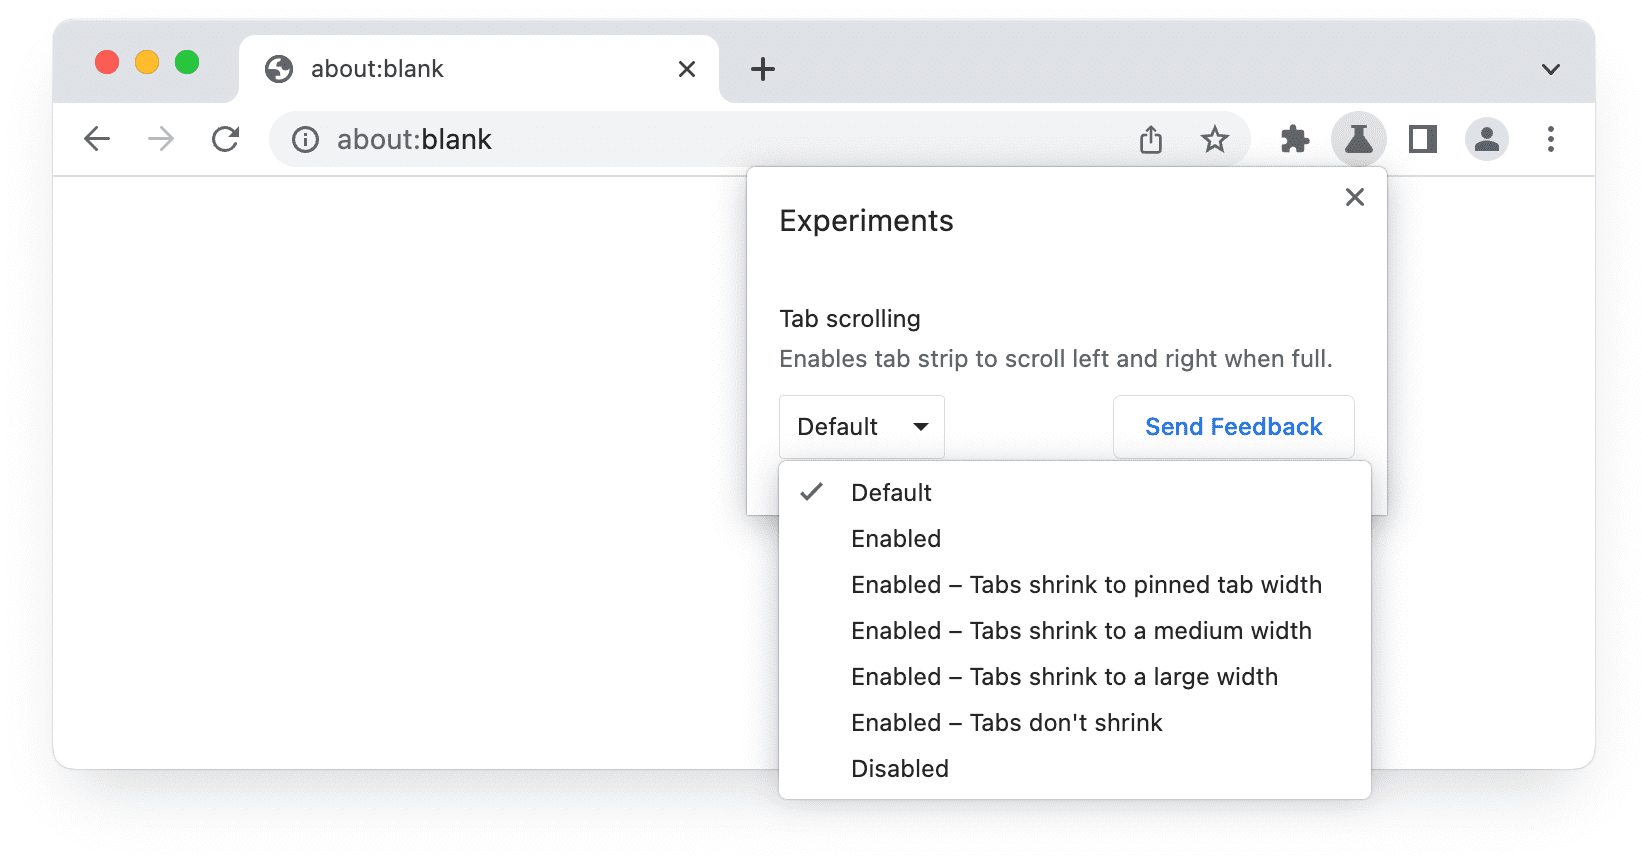 צילום מסך של ממשק המשתמש של הניסויים ב-Chrome בטא, שבו מוצגות אפשרויות לגלילת כרטיסיות.